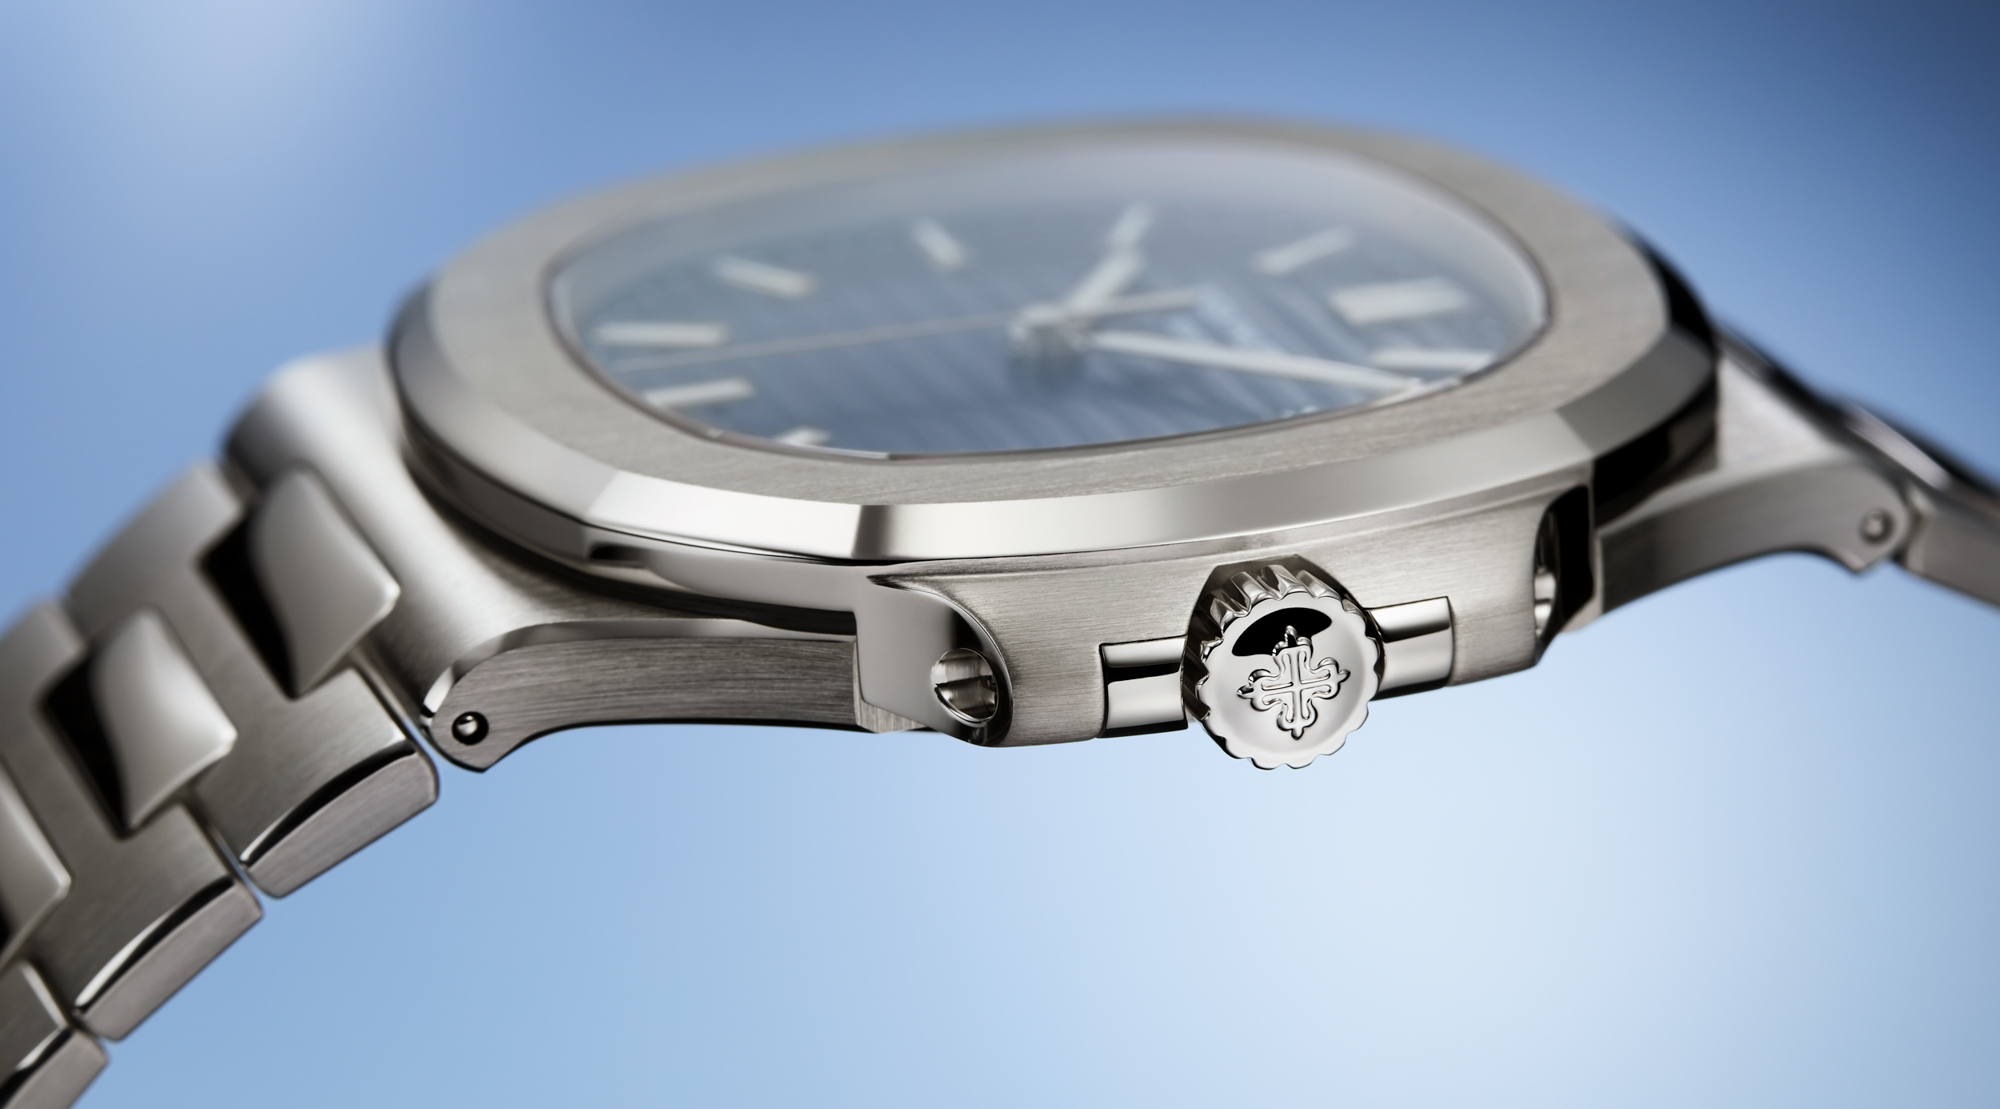 Nita Ambani's exquisite style: Embrace luxury with Patek Philippe watches